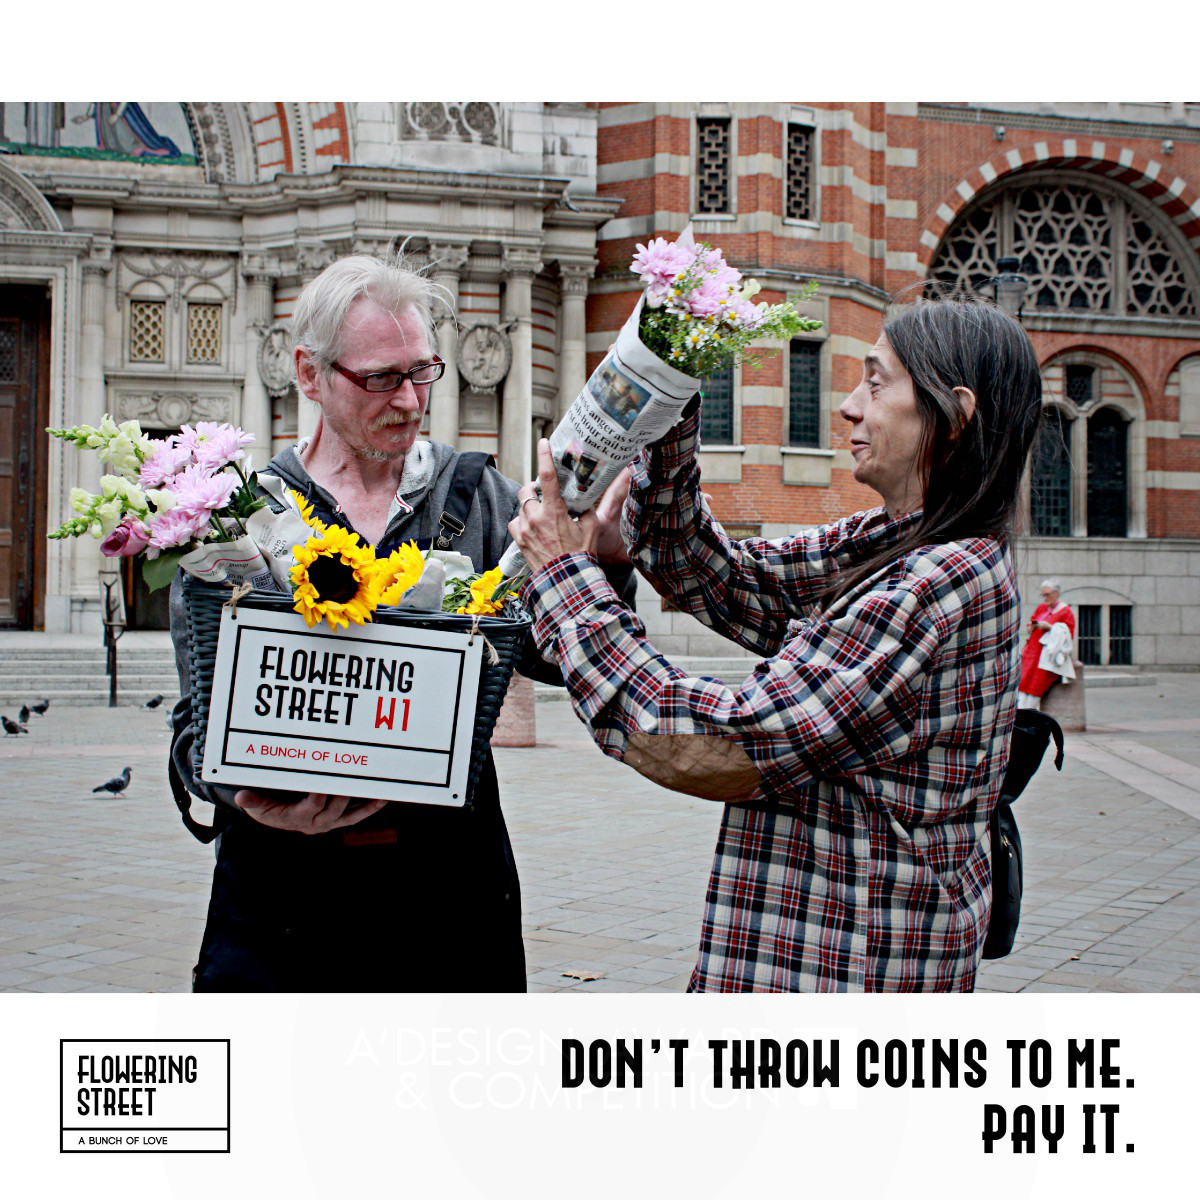 거리를 꽃으로 수놓다: 런던의 홈리스를 위한 브랜드, '플라워링 스트리트'